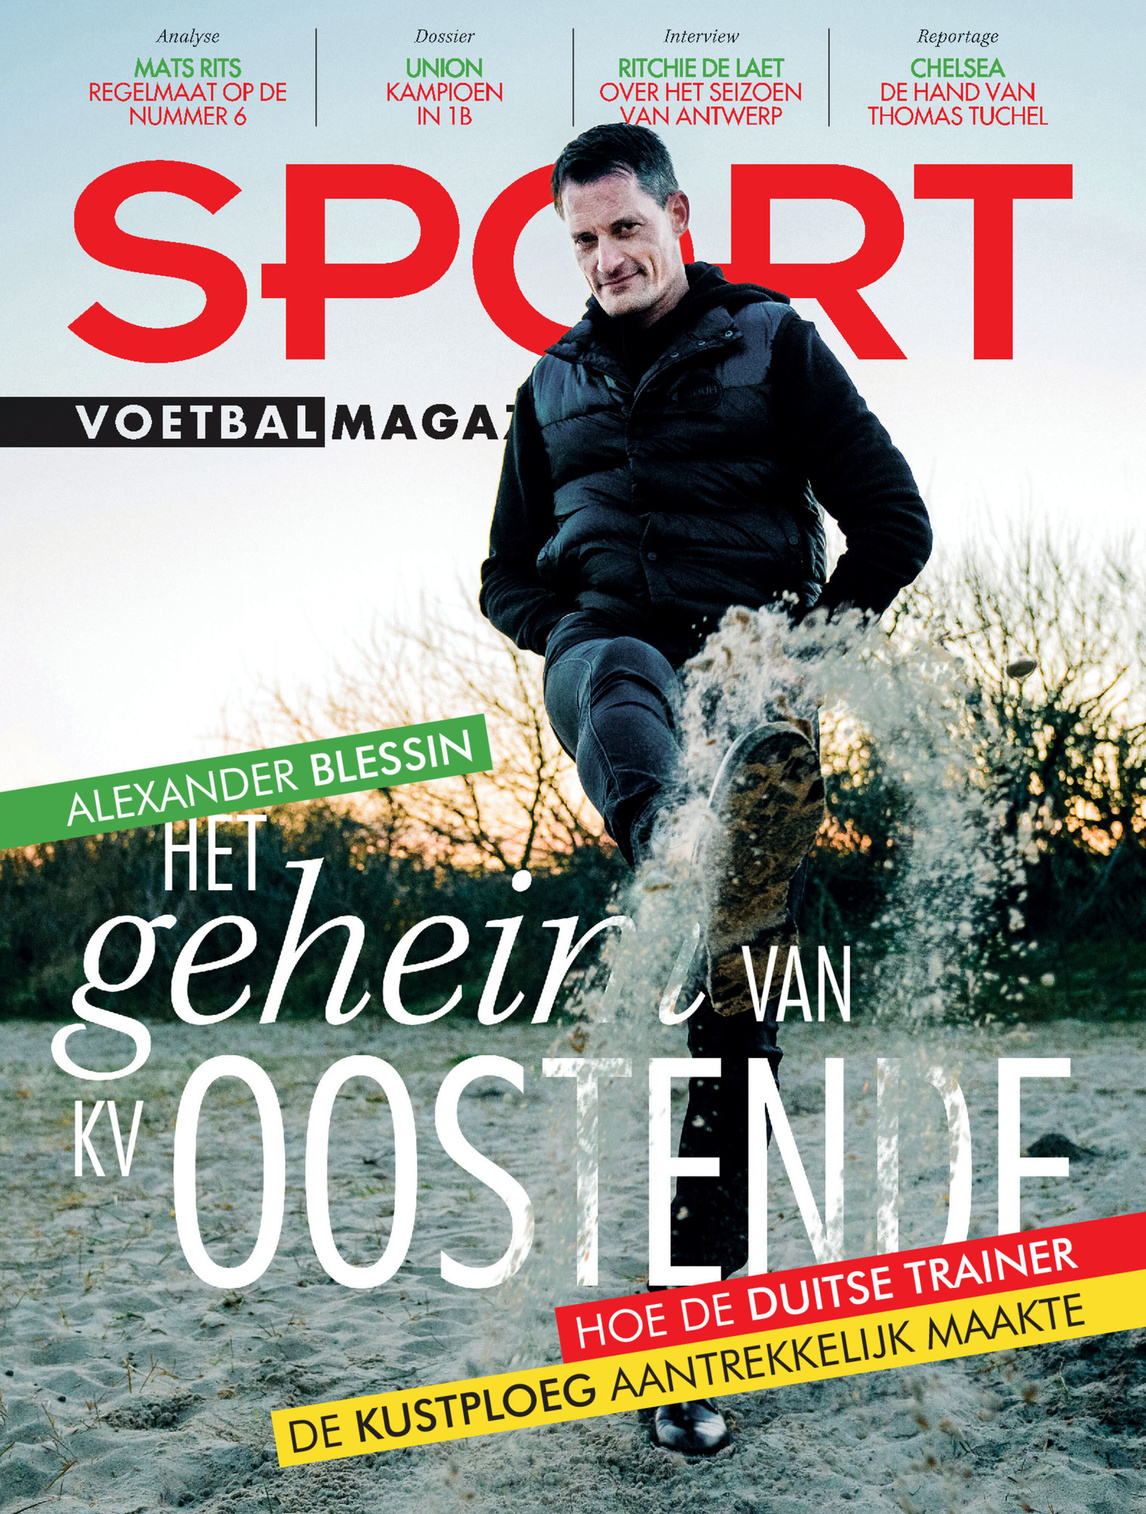 Alexander Blessin staat deze week op de cover van Sport/Voetbalmagazine, Sport/Voetbalmagazine